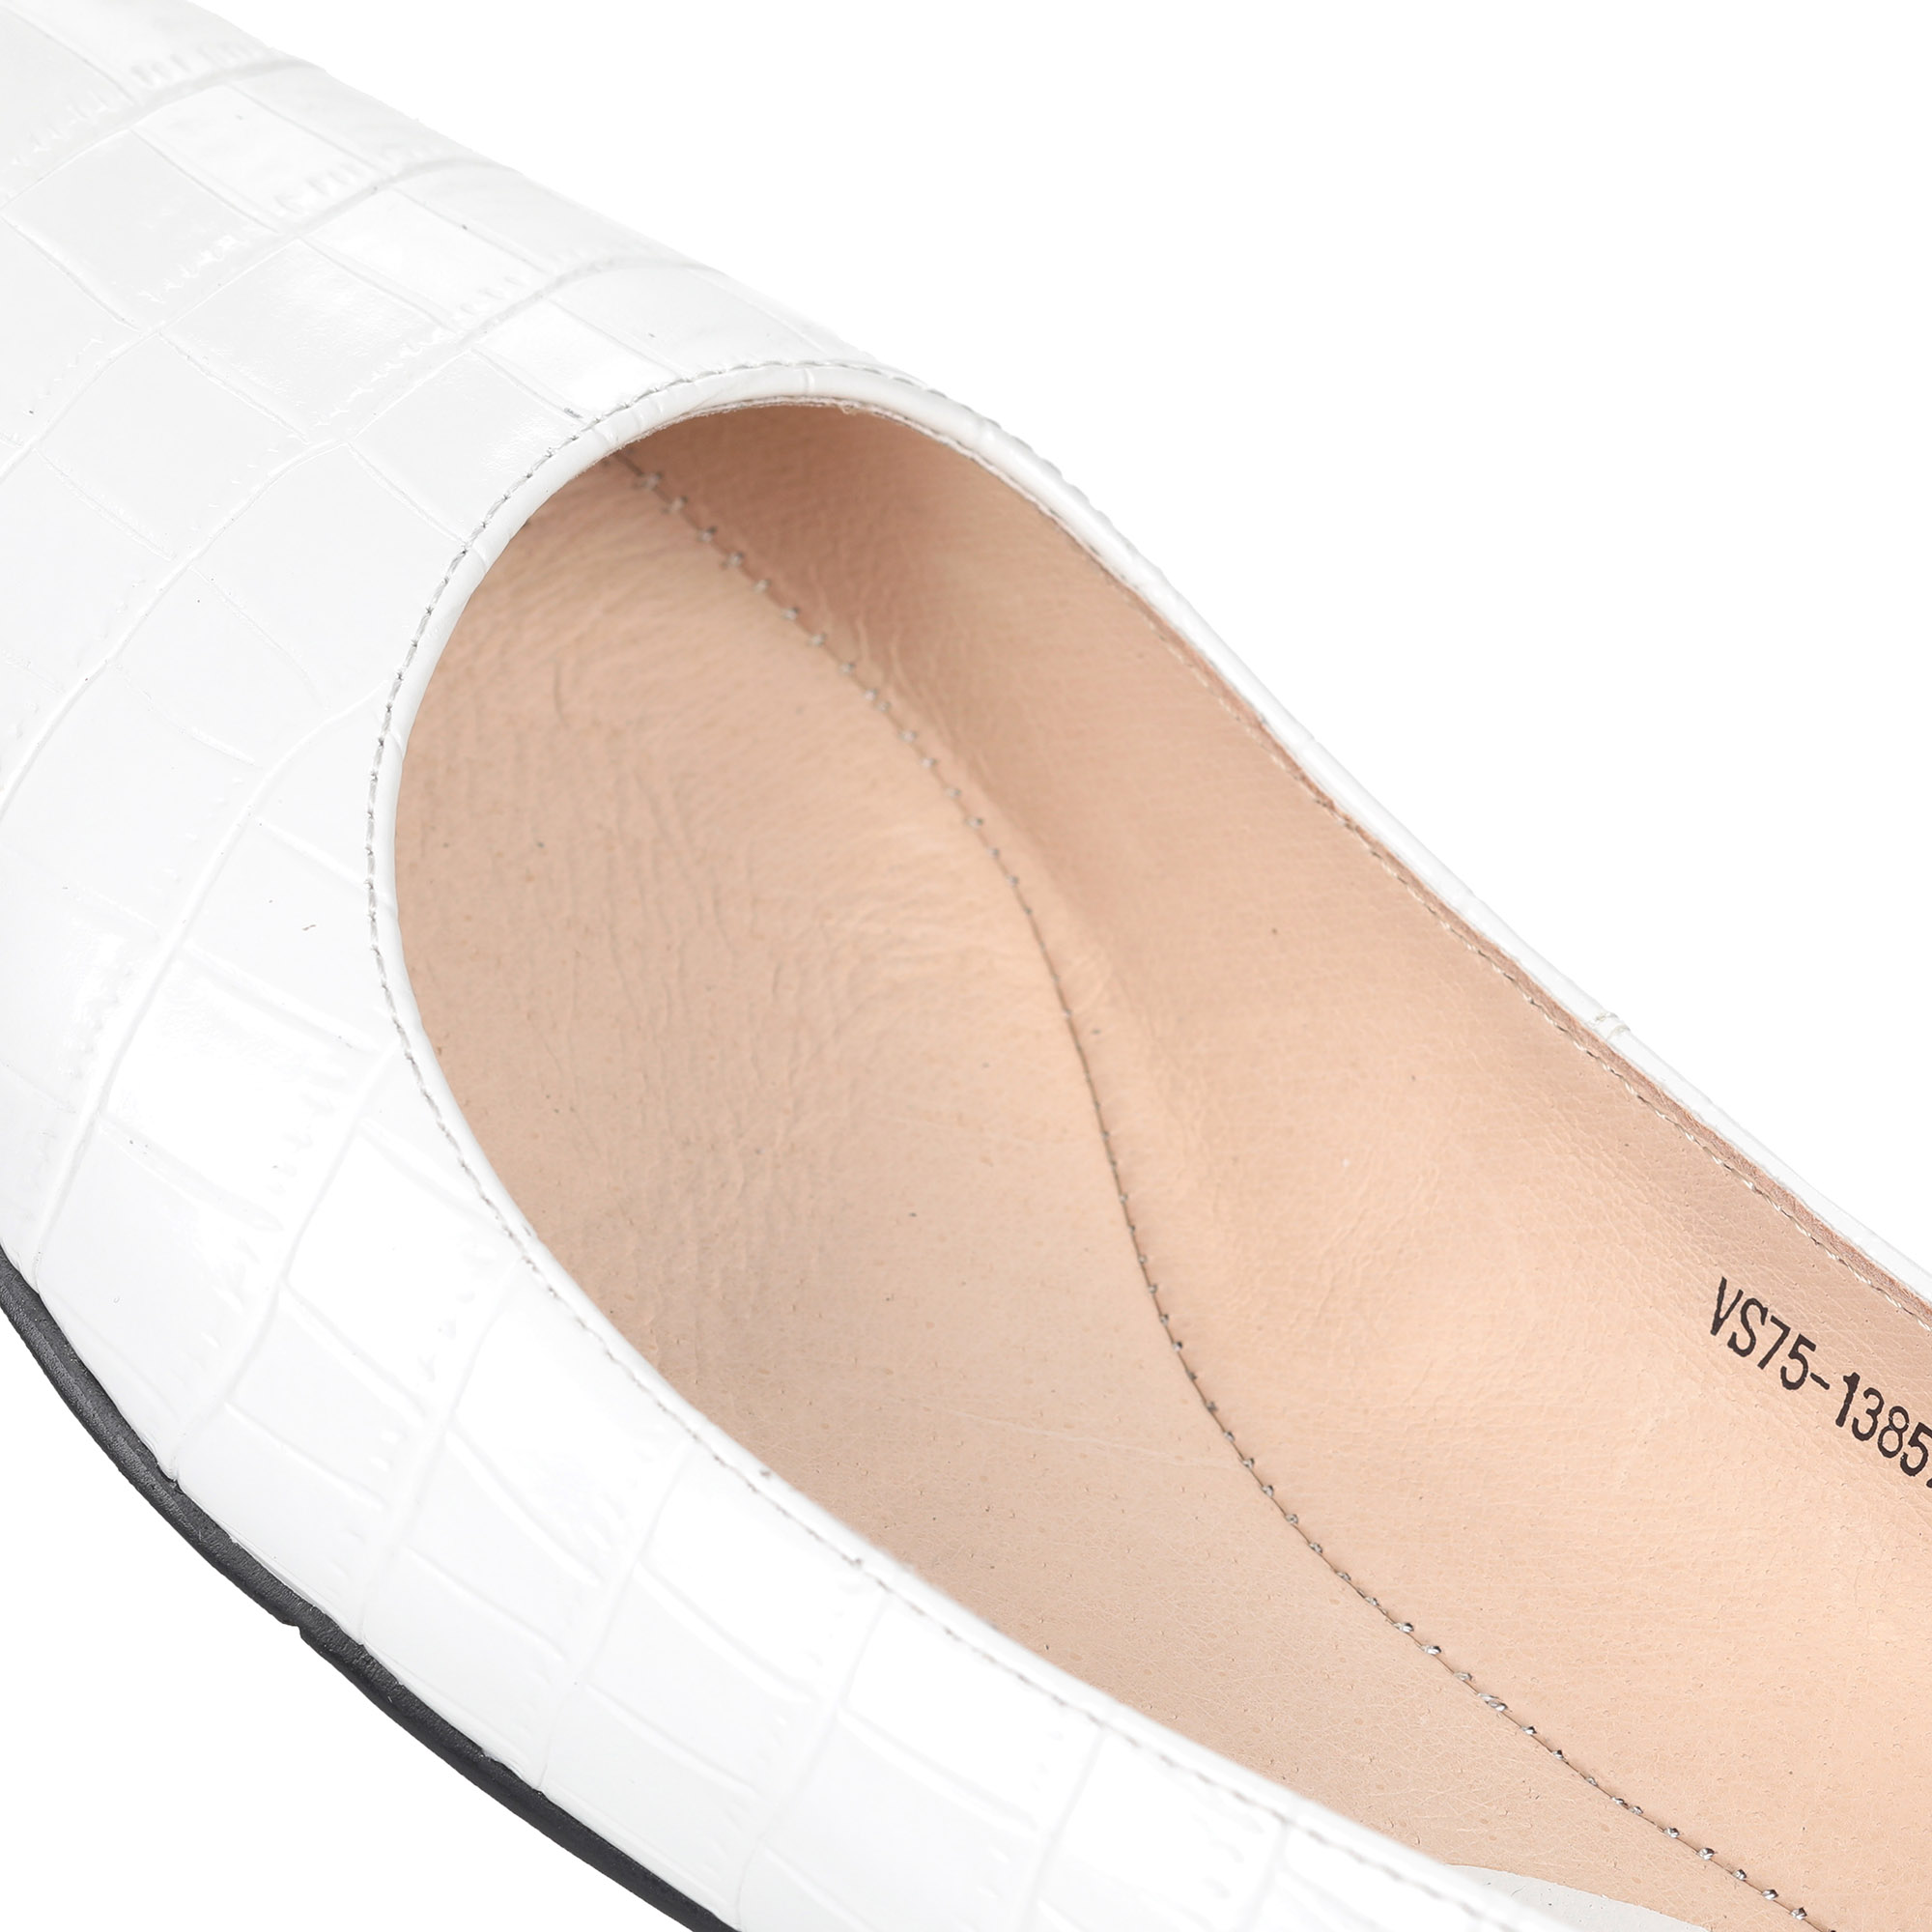 Белые туфли из кожи на небольшом каблуке от Respect-shoes